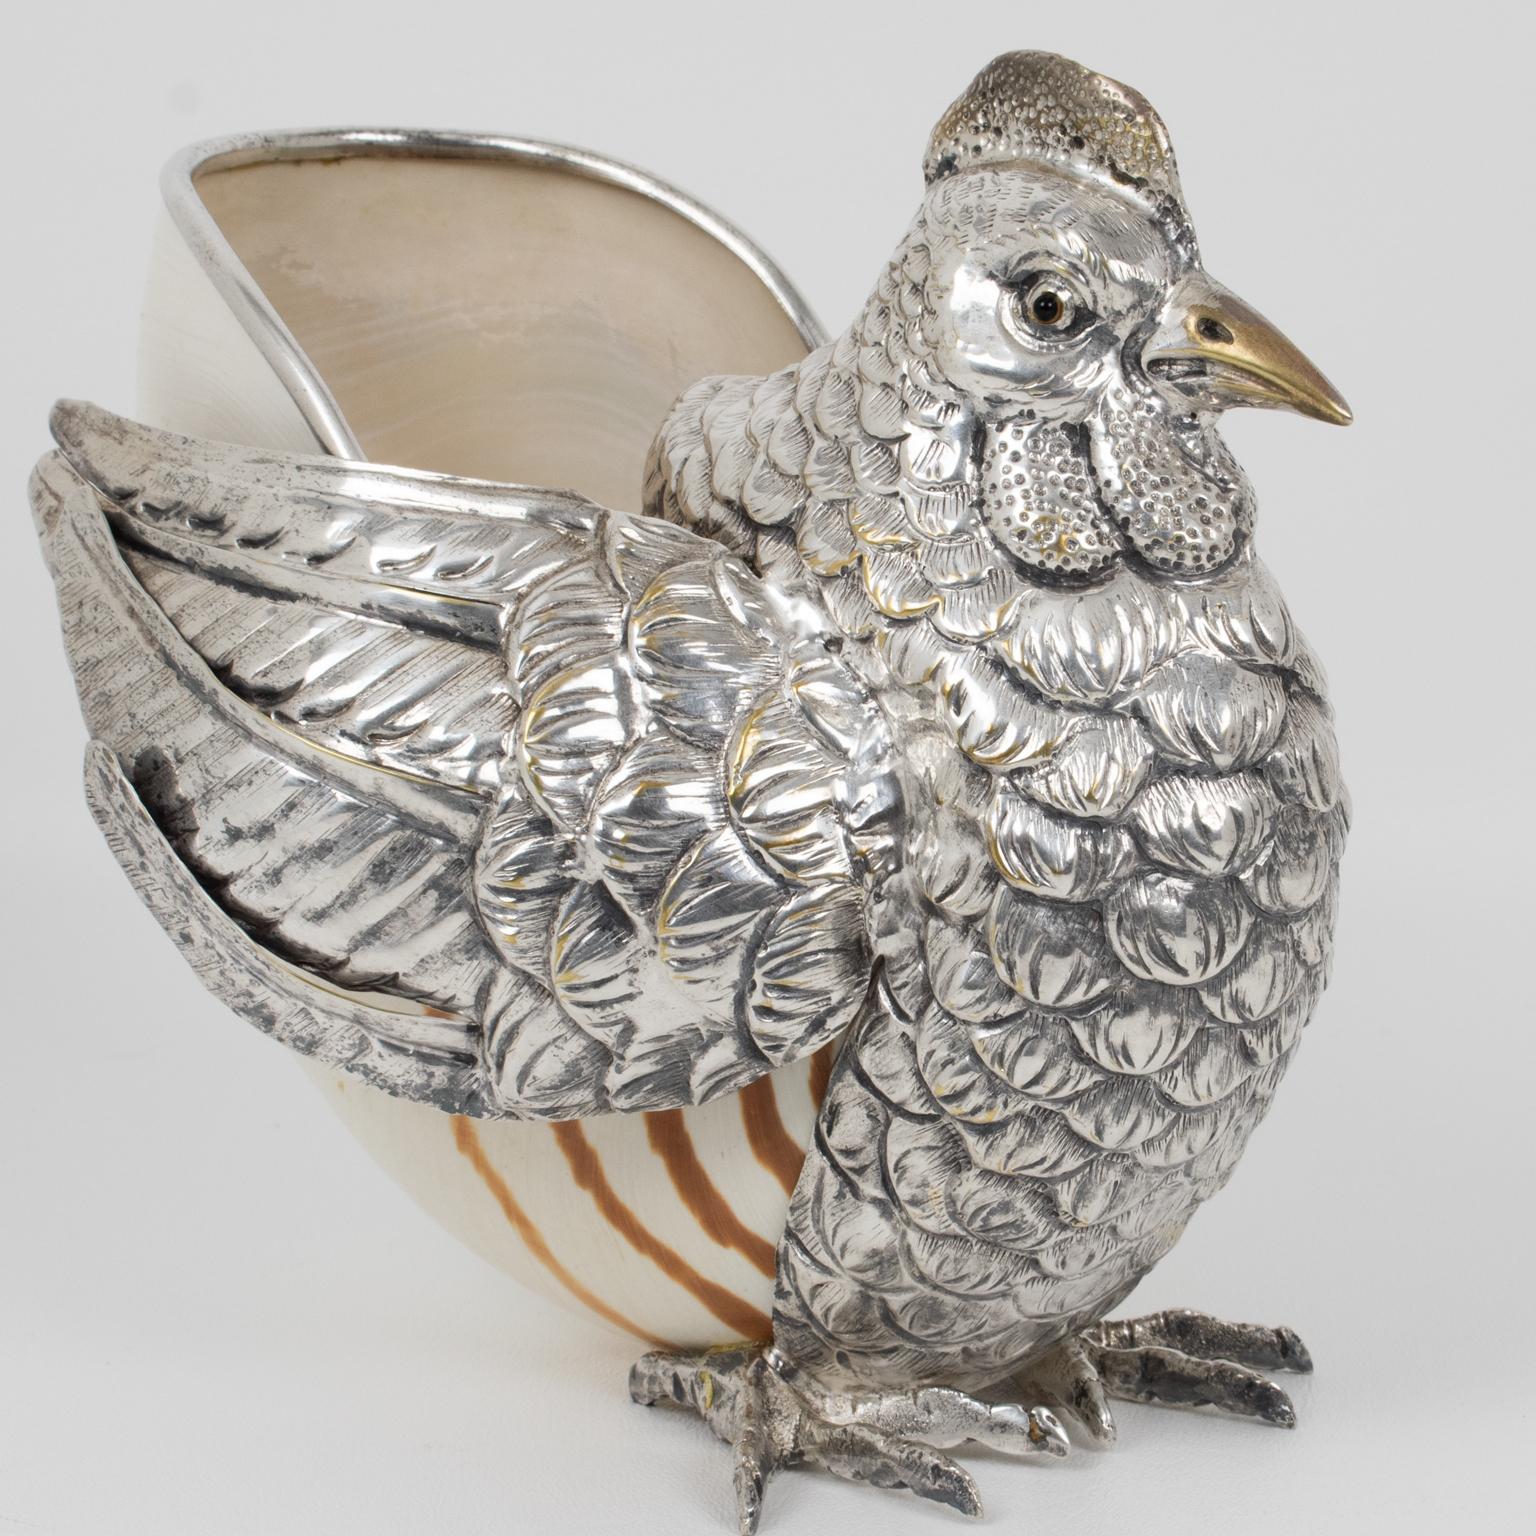 Ce magnifique oiseau-poule en argent massif et en coquillage a été conçu et réalisé à la main par l'artiste italienne Gabriella Binazzi (attribuée à). On entend l'océan dans cet adorable objet d'art de Binazzi. La tête, le plumage et les pattes de